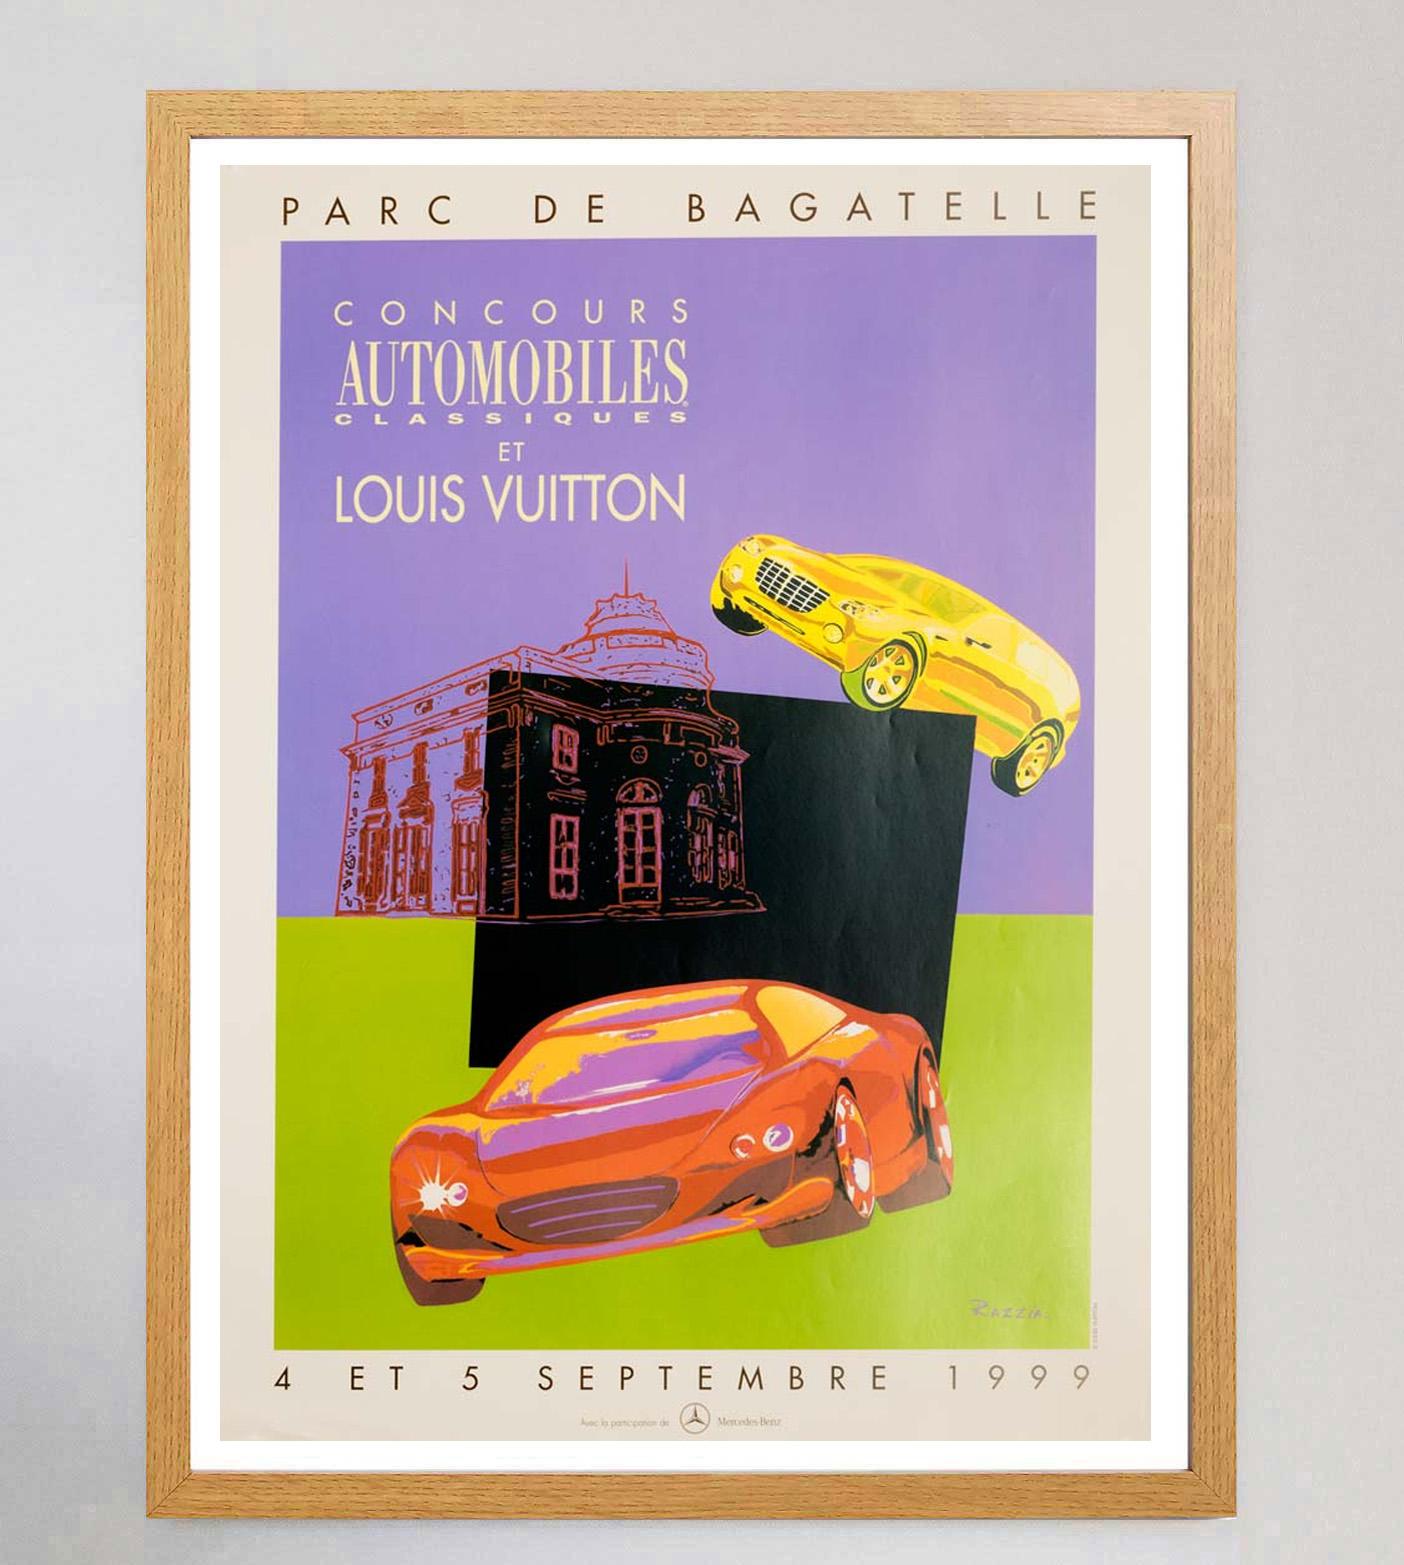 Le Louis Vuitton Bagatelle Concours Automobiles Classiques est un événement annuel qui se tient au Parc de Bagatelle à Paris, en France, depuis 1988. Cette magnifique pièce de 1999 évoque un style pop art avec des formes pastel vibrantes.